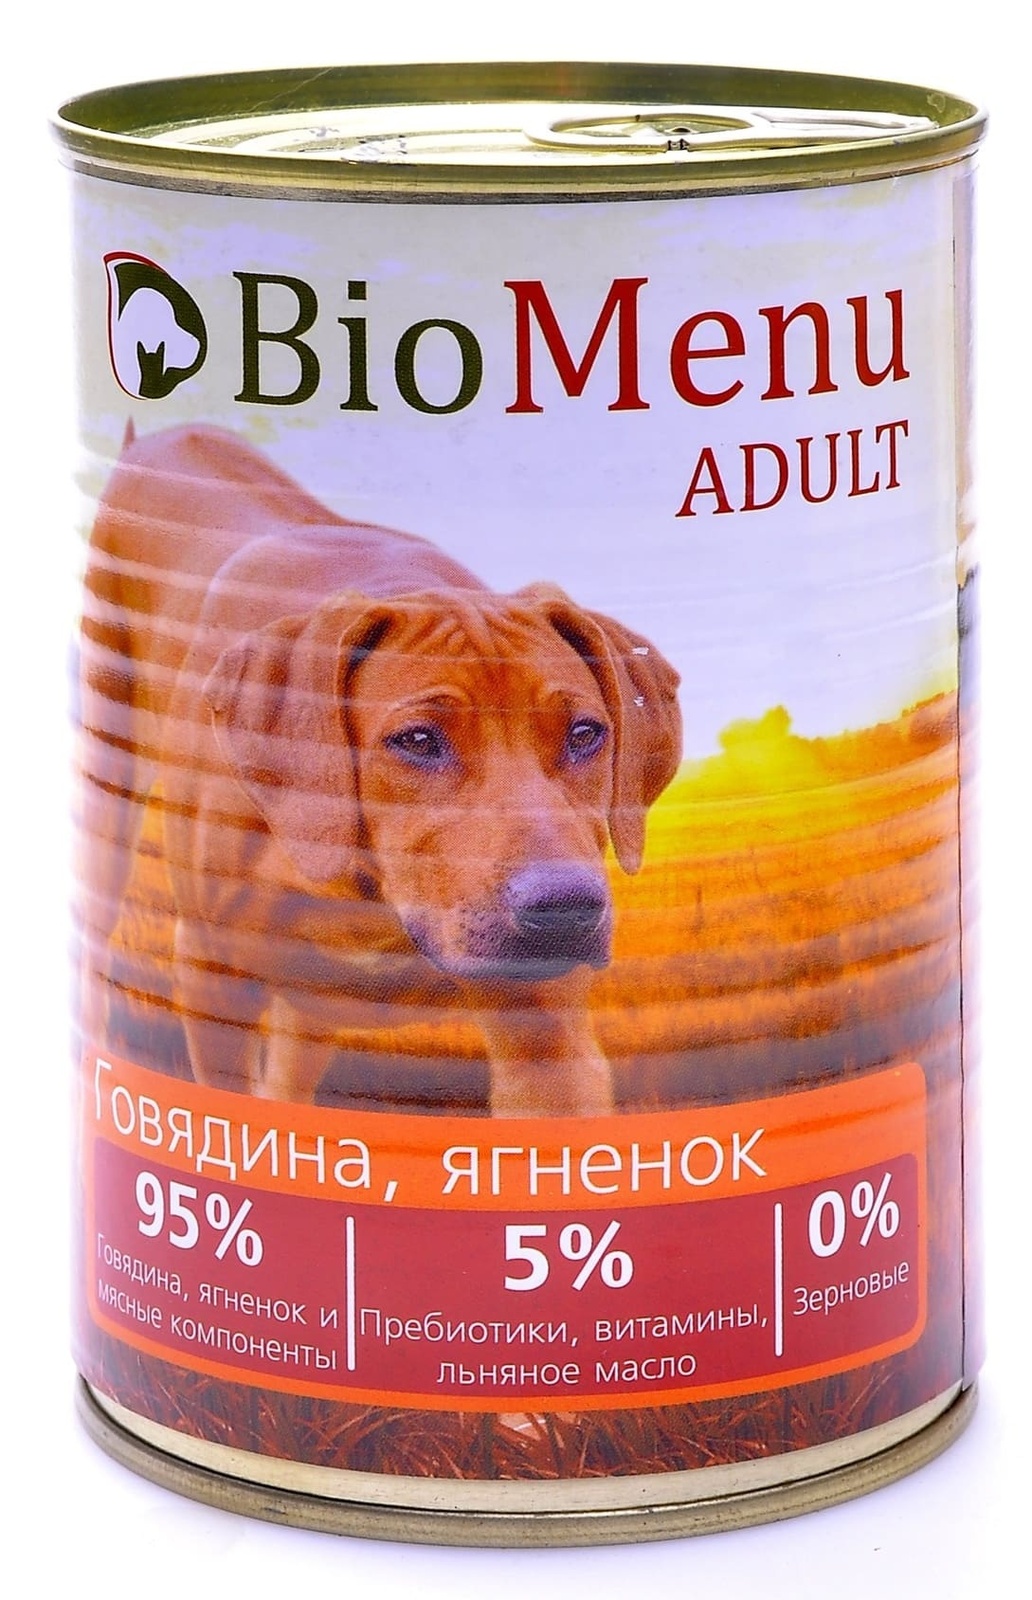 BioMenu BioMenu консервы для собак говядина и ягненок (100 г) biomenu biomenu гипоаллергенные консервы для собак индейка и кролик 100 г